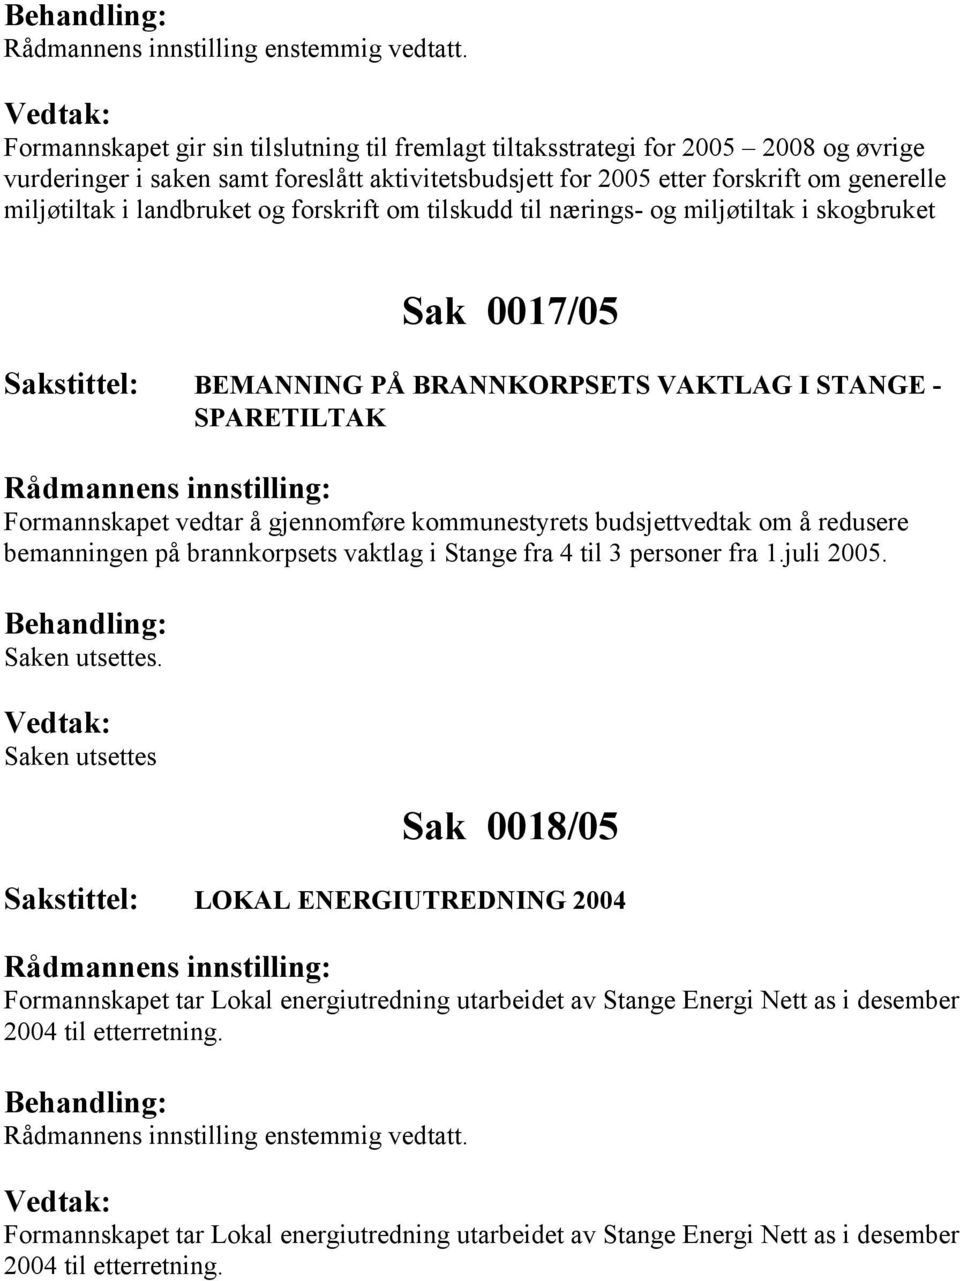 budsjettvedtak om å redusere bemanningen på brannkorpsets vaktlag i Stange fra 4 til 3 personer fra 1.juli 2005. Saken utsettes.